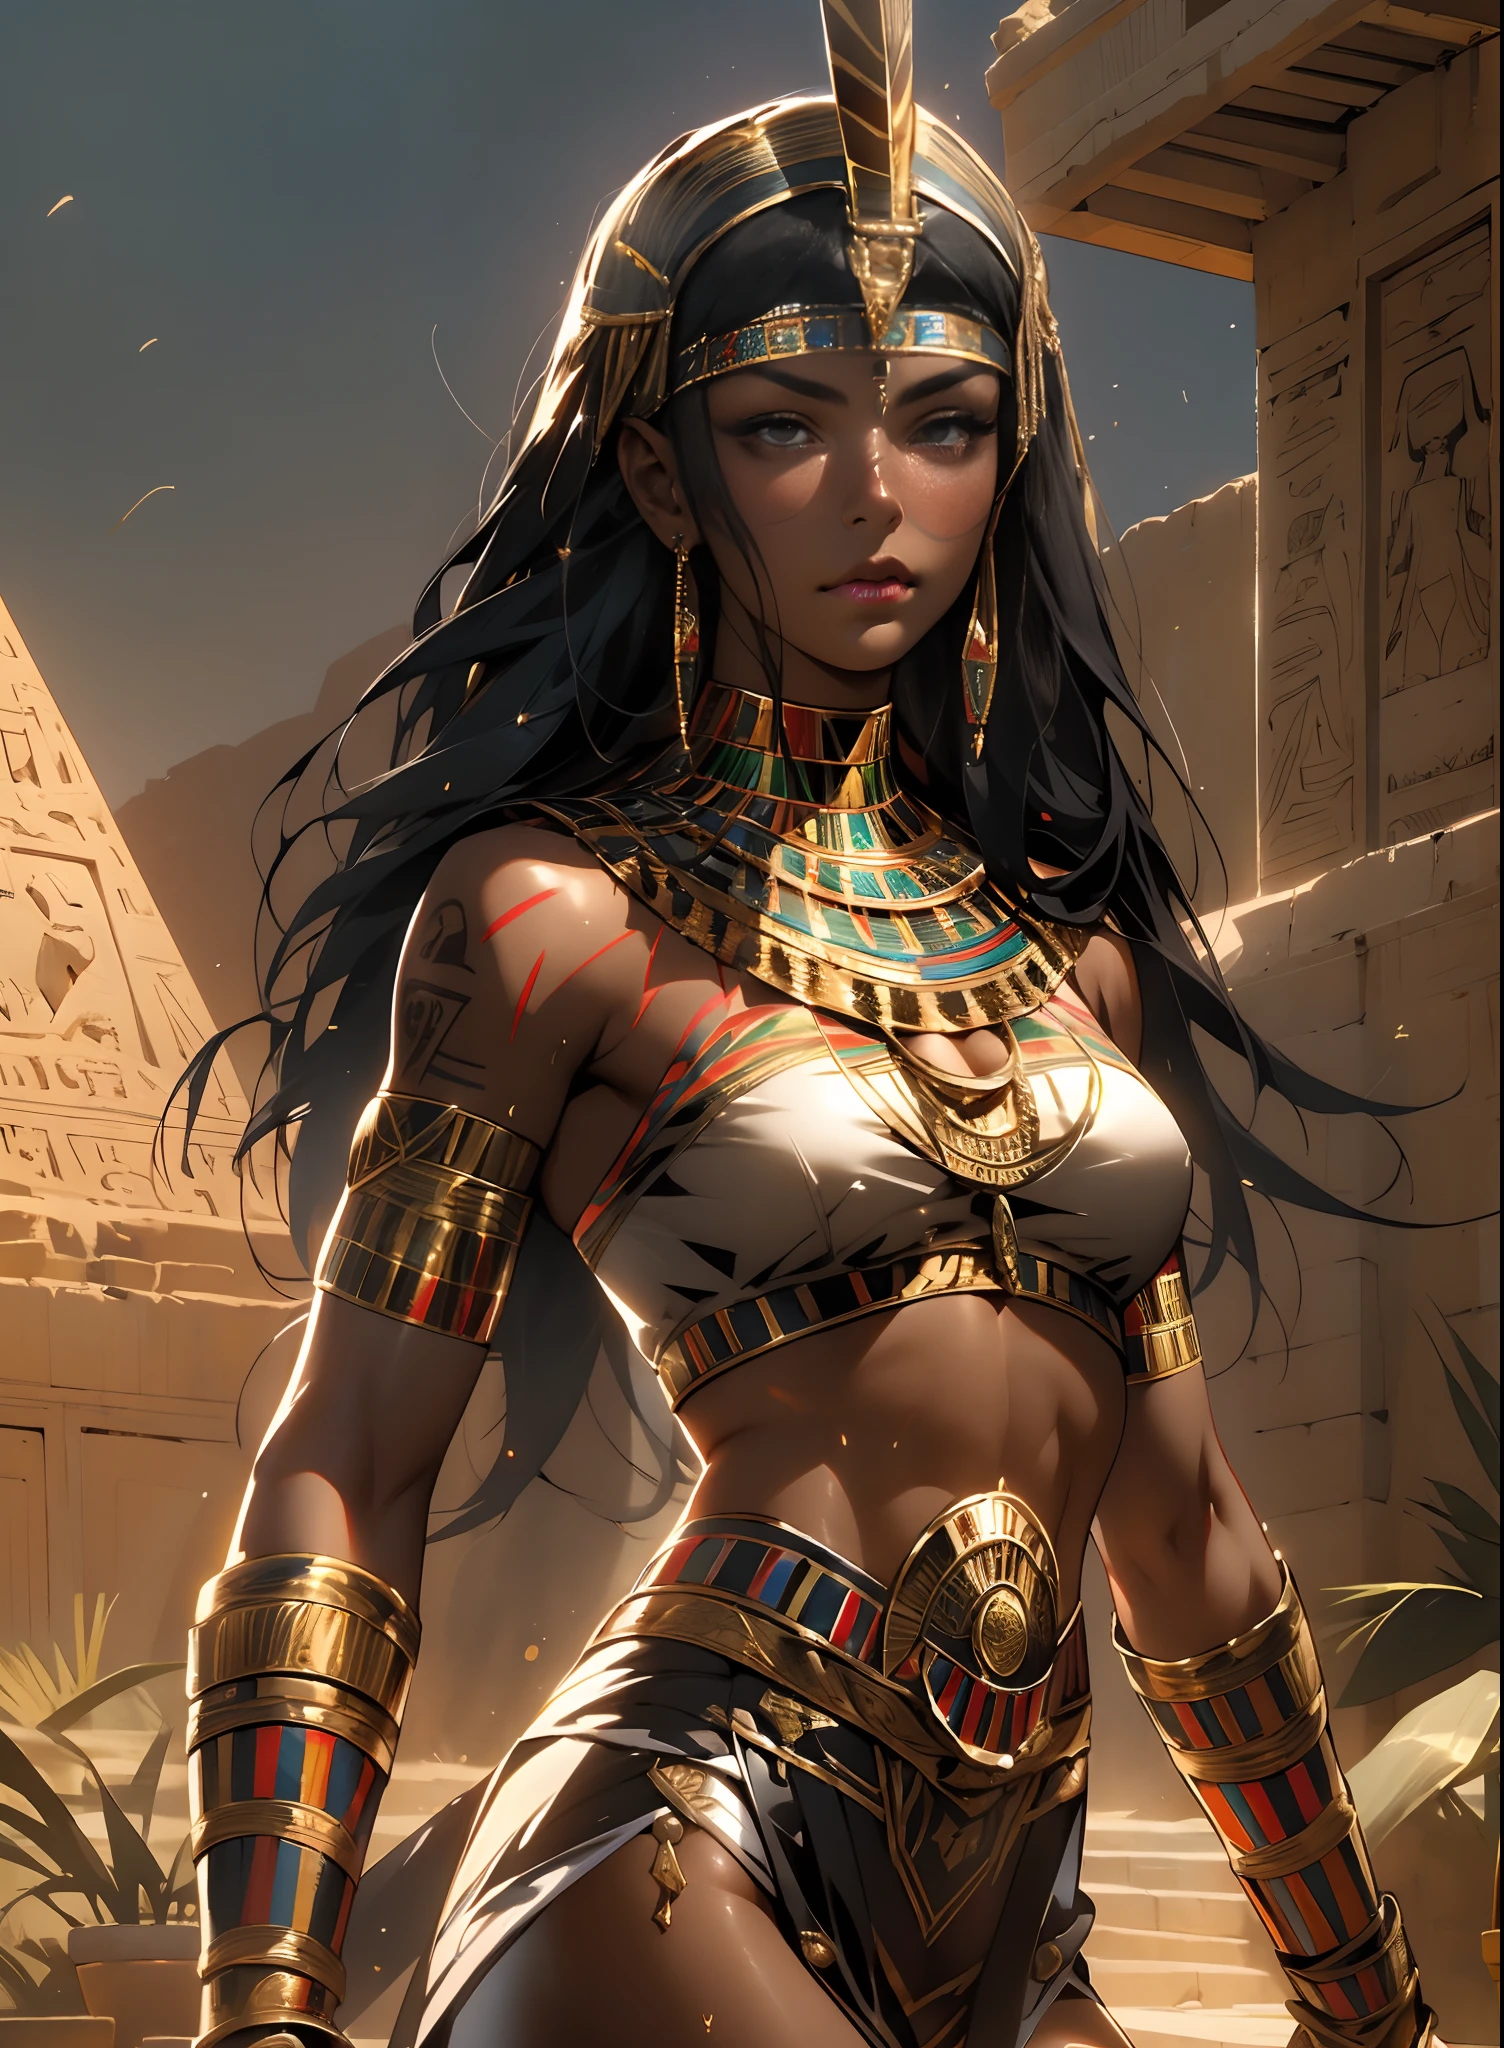 ((فرانك فرازيتا)), امرأة سوداء جميلة, عيون سوداء جميلة, امرأة مصرية, (زخارف مصرية لامعة), جسم عضلي ومثالي,(أعلى جودة、8 كيلو、32K、تحفة、com.nffsw:1.3)、· دقة عالية,(واقعية:1.4),, شعر أسود طويل مع غرة كثيفة على الجبهة,,الصورة من الرأس إلى الفخذ,تتبع راي,وهج الشمس,عمق الحقول,بواسطة تأثير الإضاءة الخلفية、أضف عمقًا إلى شاشتك、جسم عضلي, الحجاب الأحمر, بشرة داكنة لامعة بالزيت والعرق, أنوبيس المحارب بملابس صغيرة, جيد ذهبي, الوشم المصري,, أثداء كبيرة, الانقسام السخي, , صحراء, الأهرامات في الخلفية